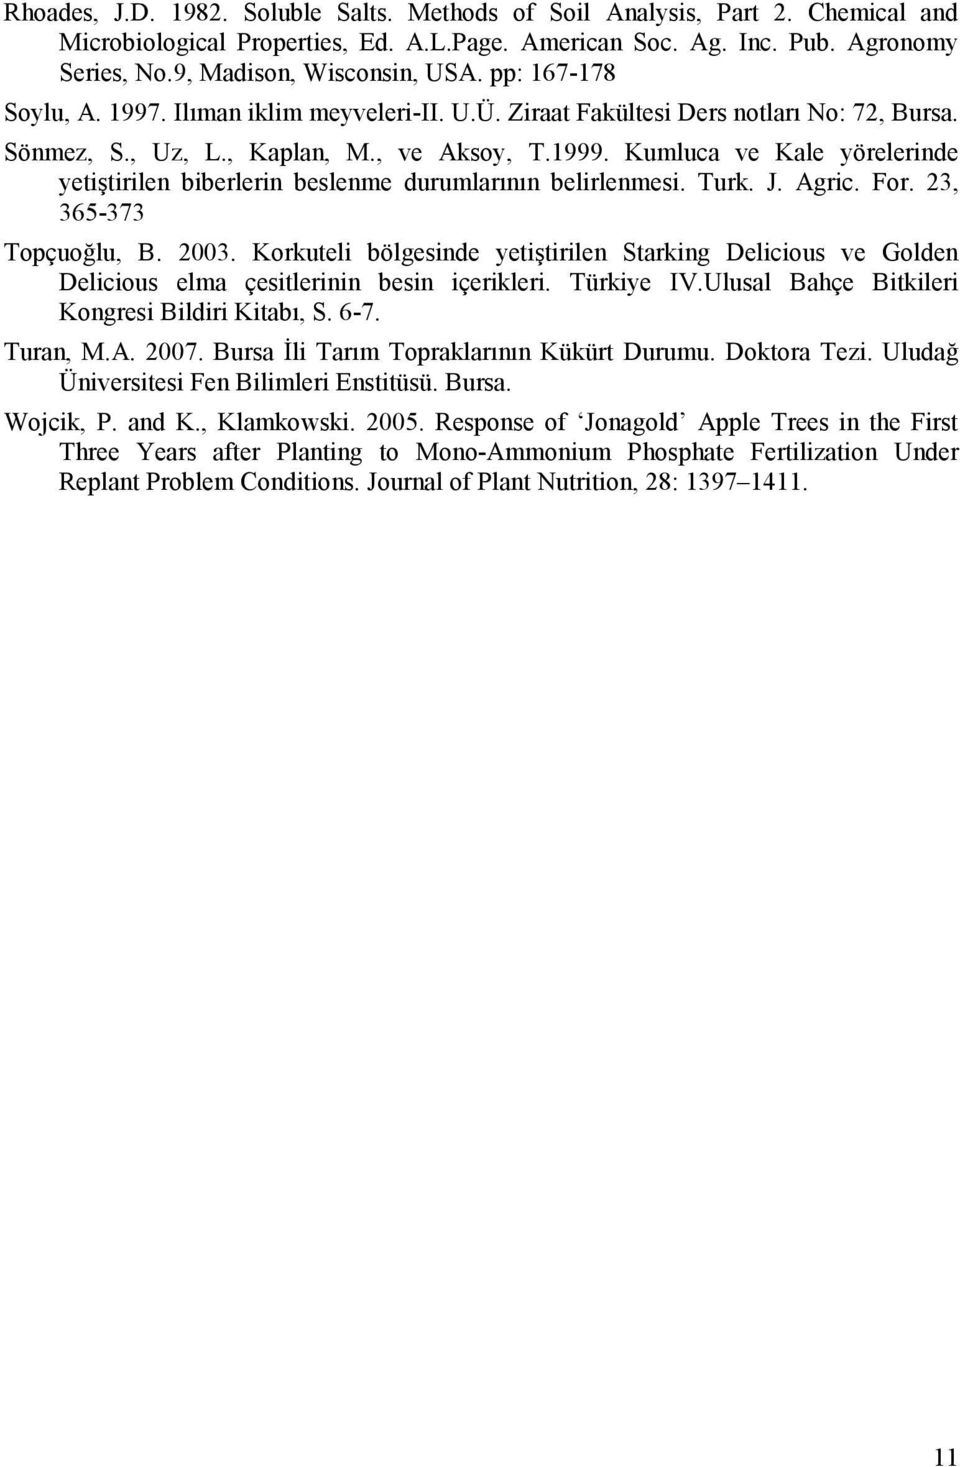 Kumluca ve Kale yörelerinde yetiştirilen biberlerin beslenme durumlarının belirlenmesi. Turk. J. Agric. For. 23, 365-373 Topçuoğlu, B. 2003.